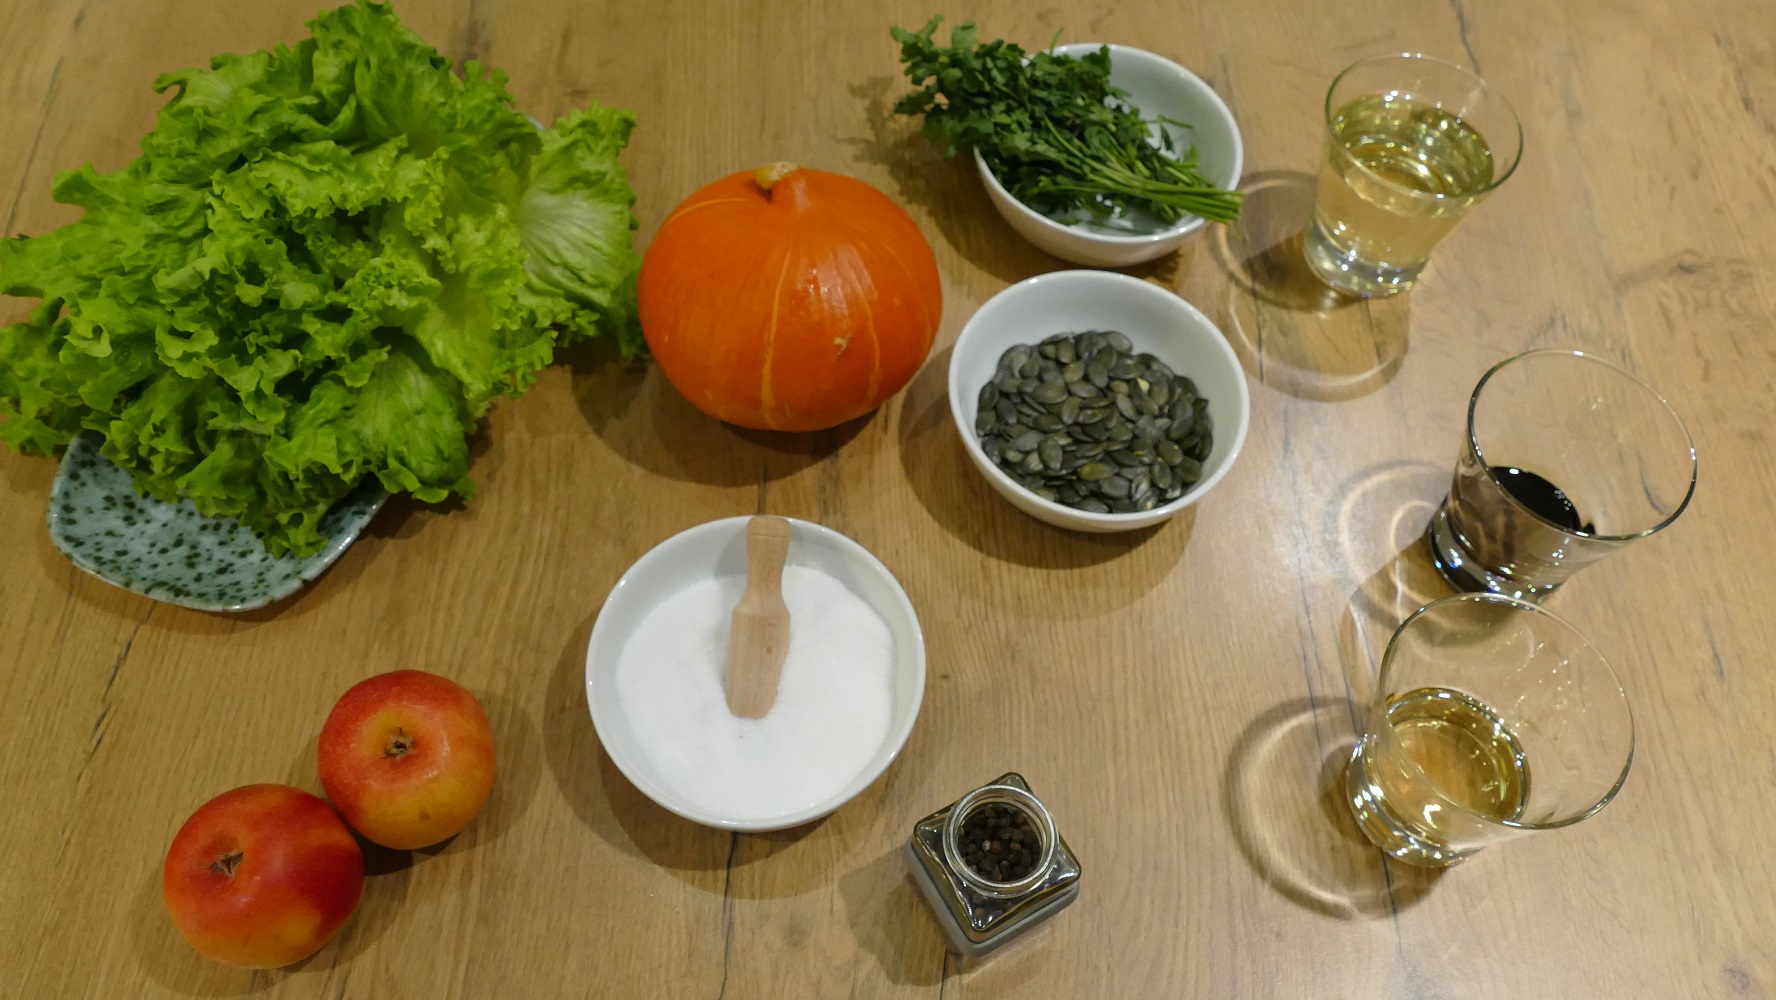 Zutaten wie Salat, Kürbis, Äpfel, Petersilie und Gewürze liegen auf einem hellen Holztisch.